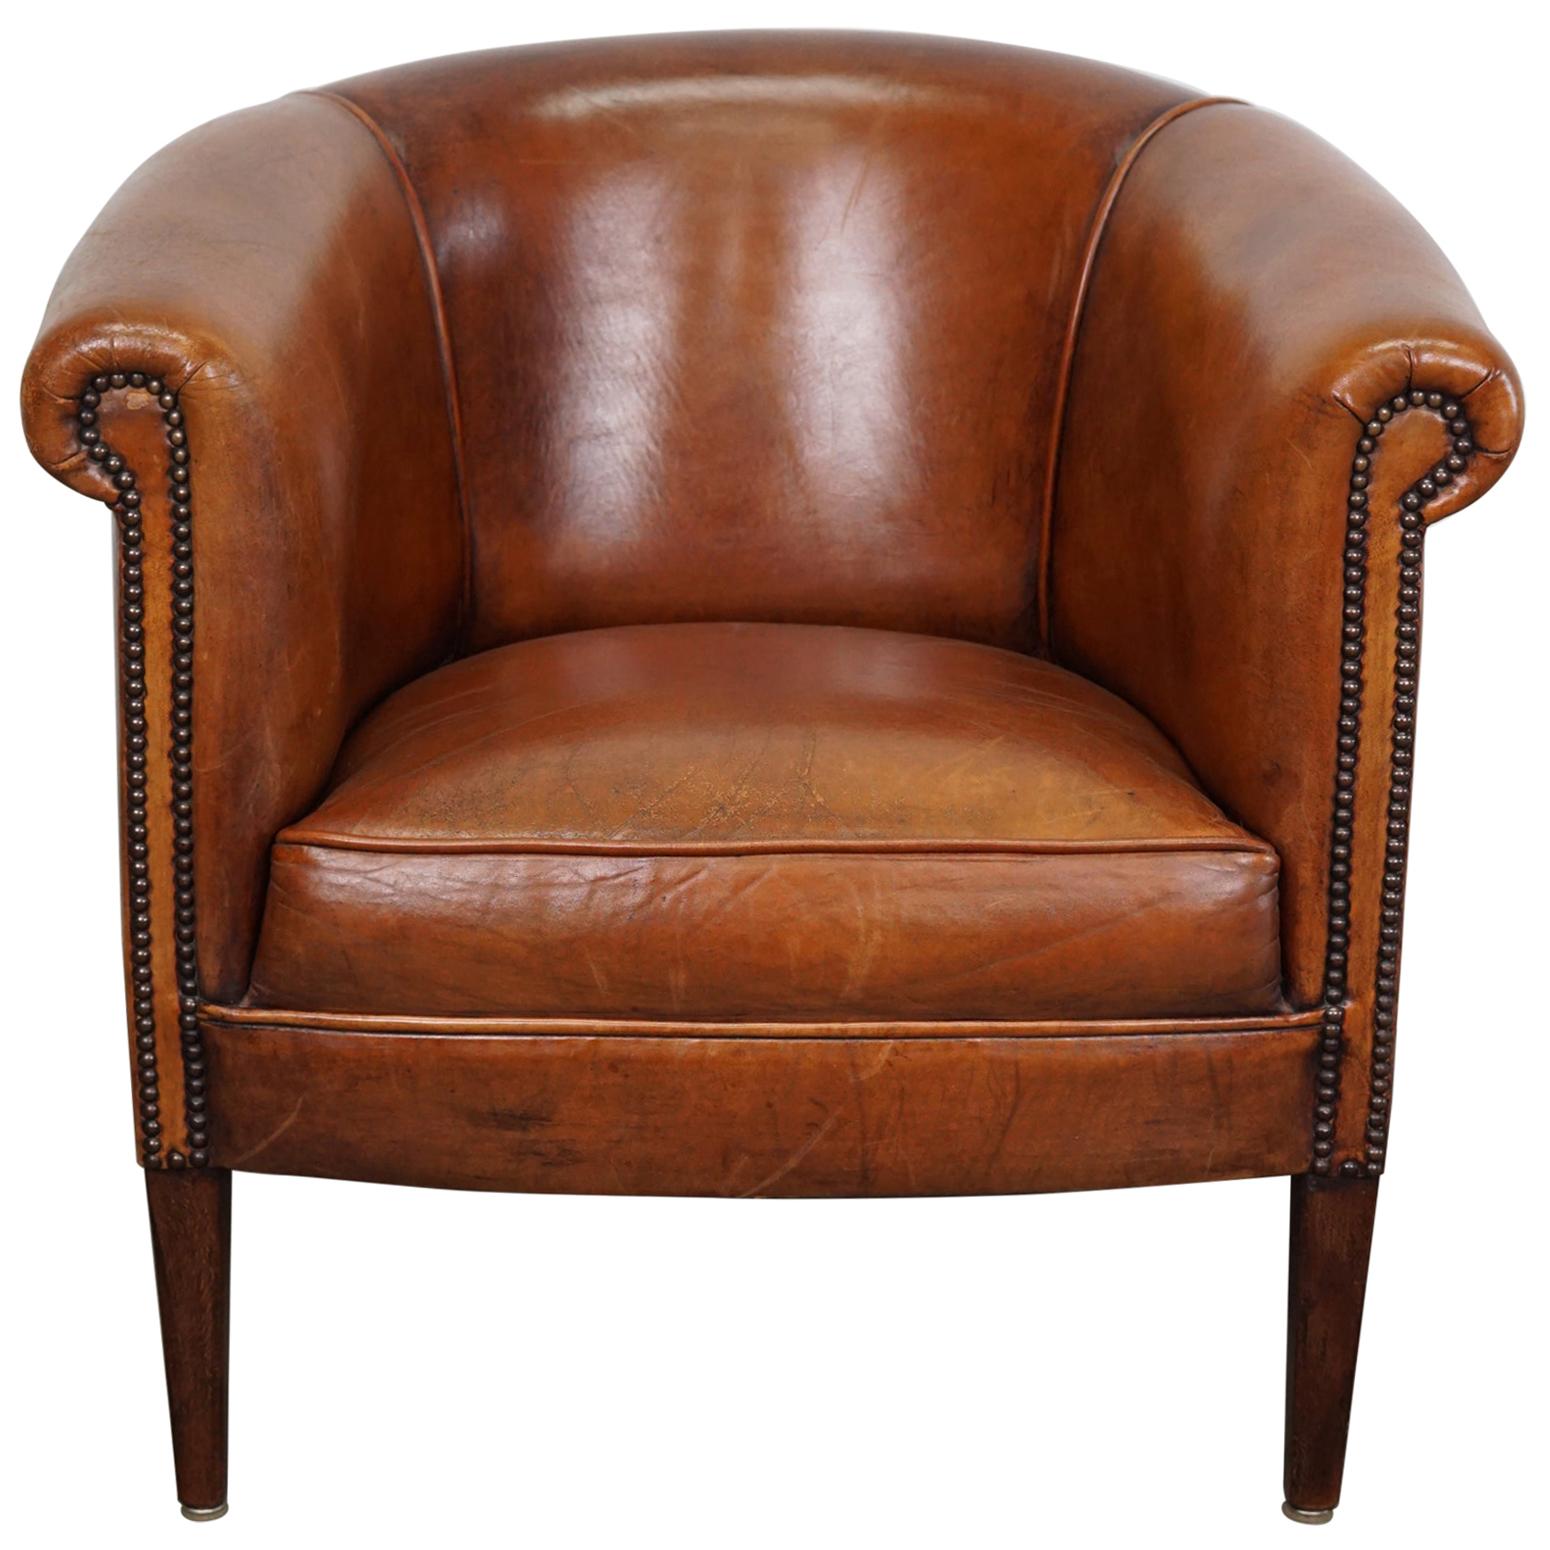 Vintage Dutch Cognac Leather Club Chair